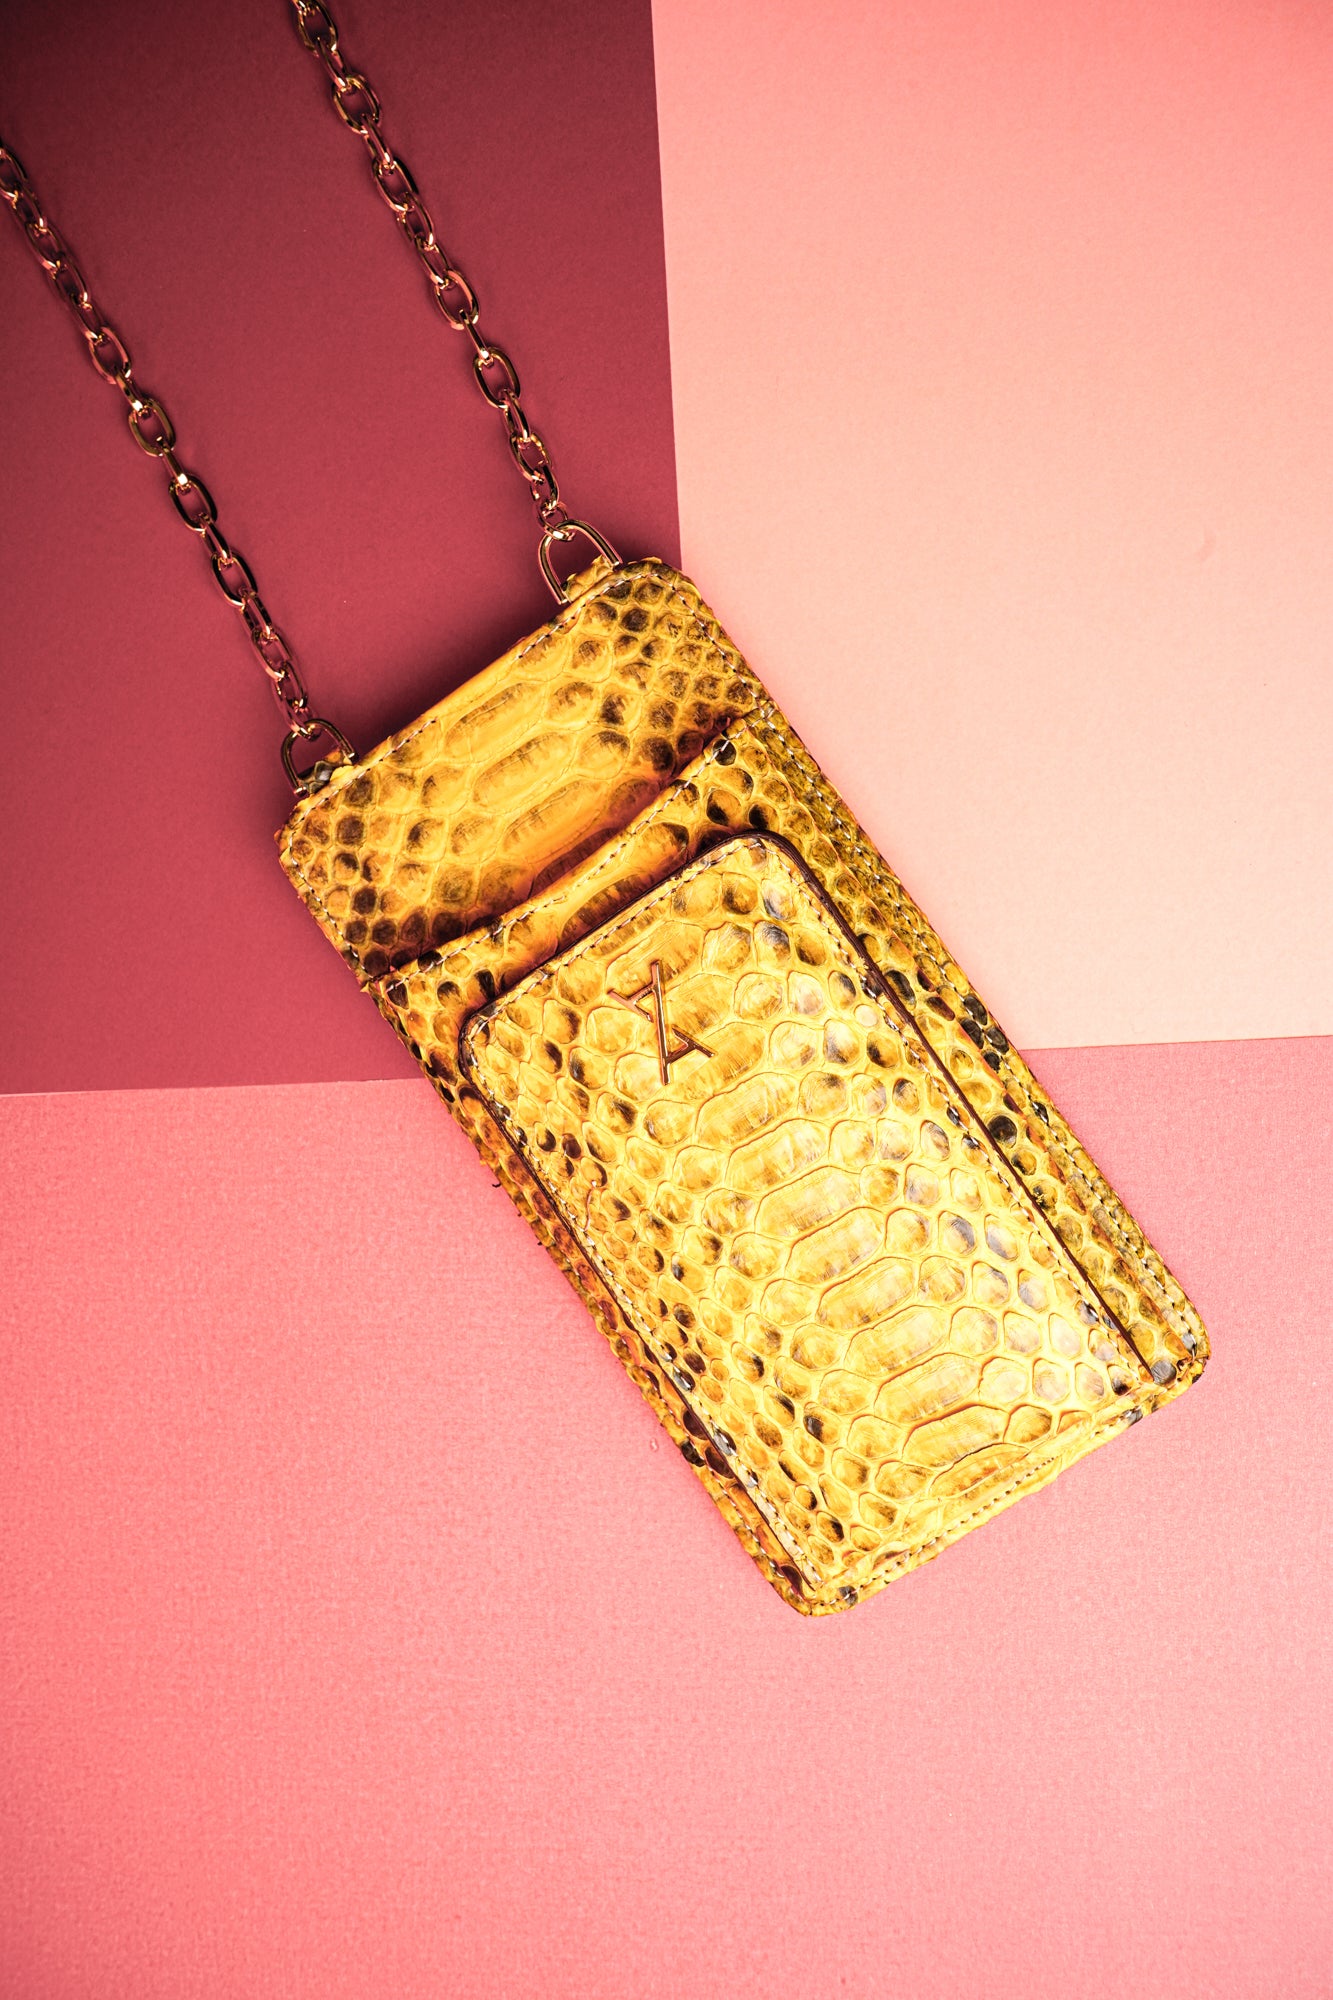 Yellow Python Leather Phone Bag